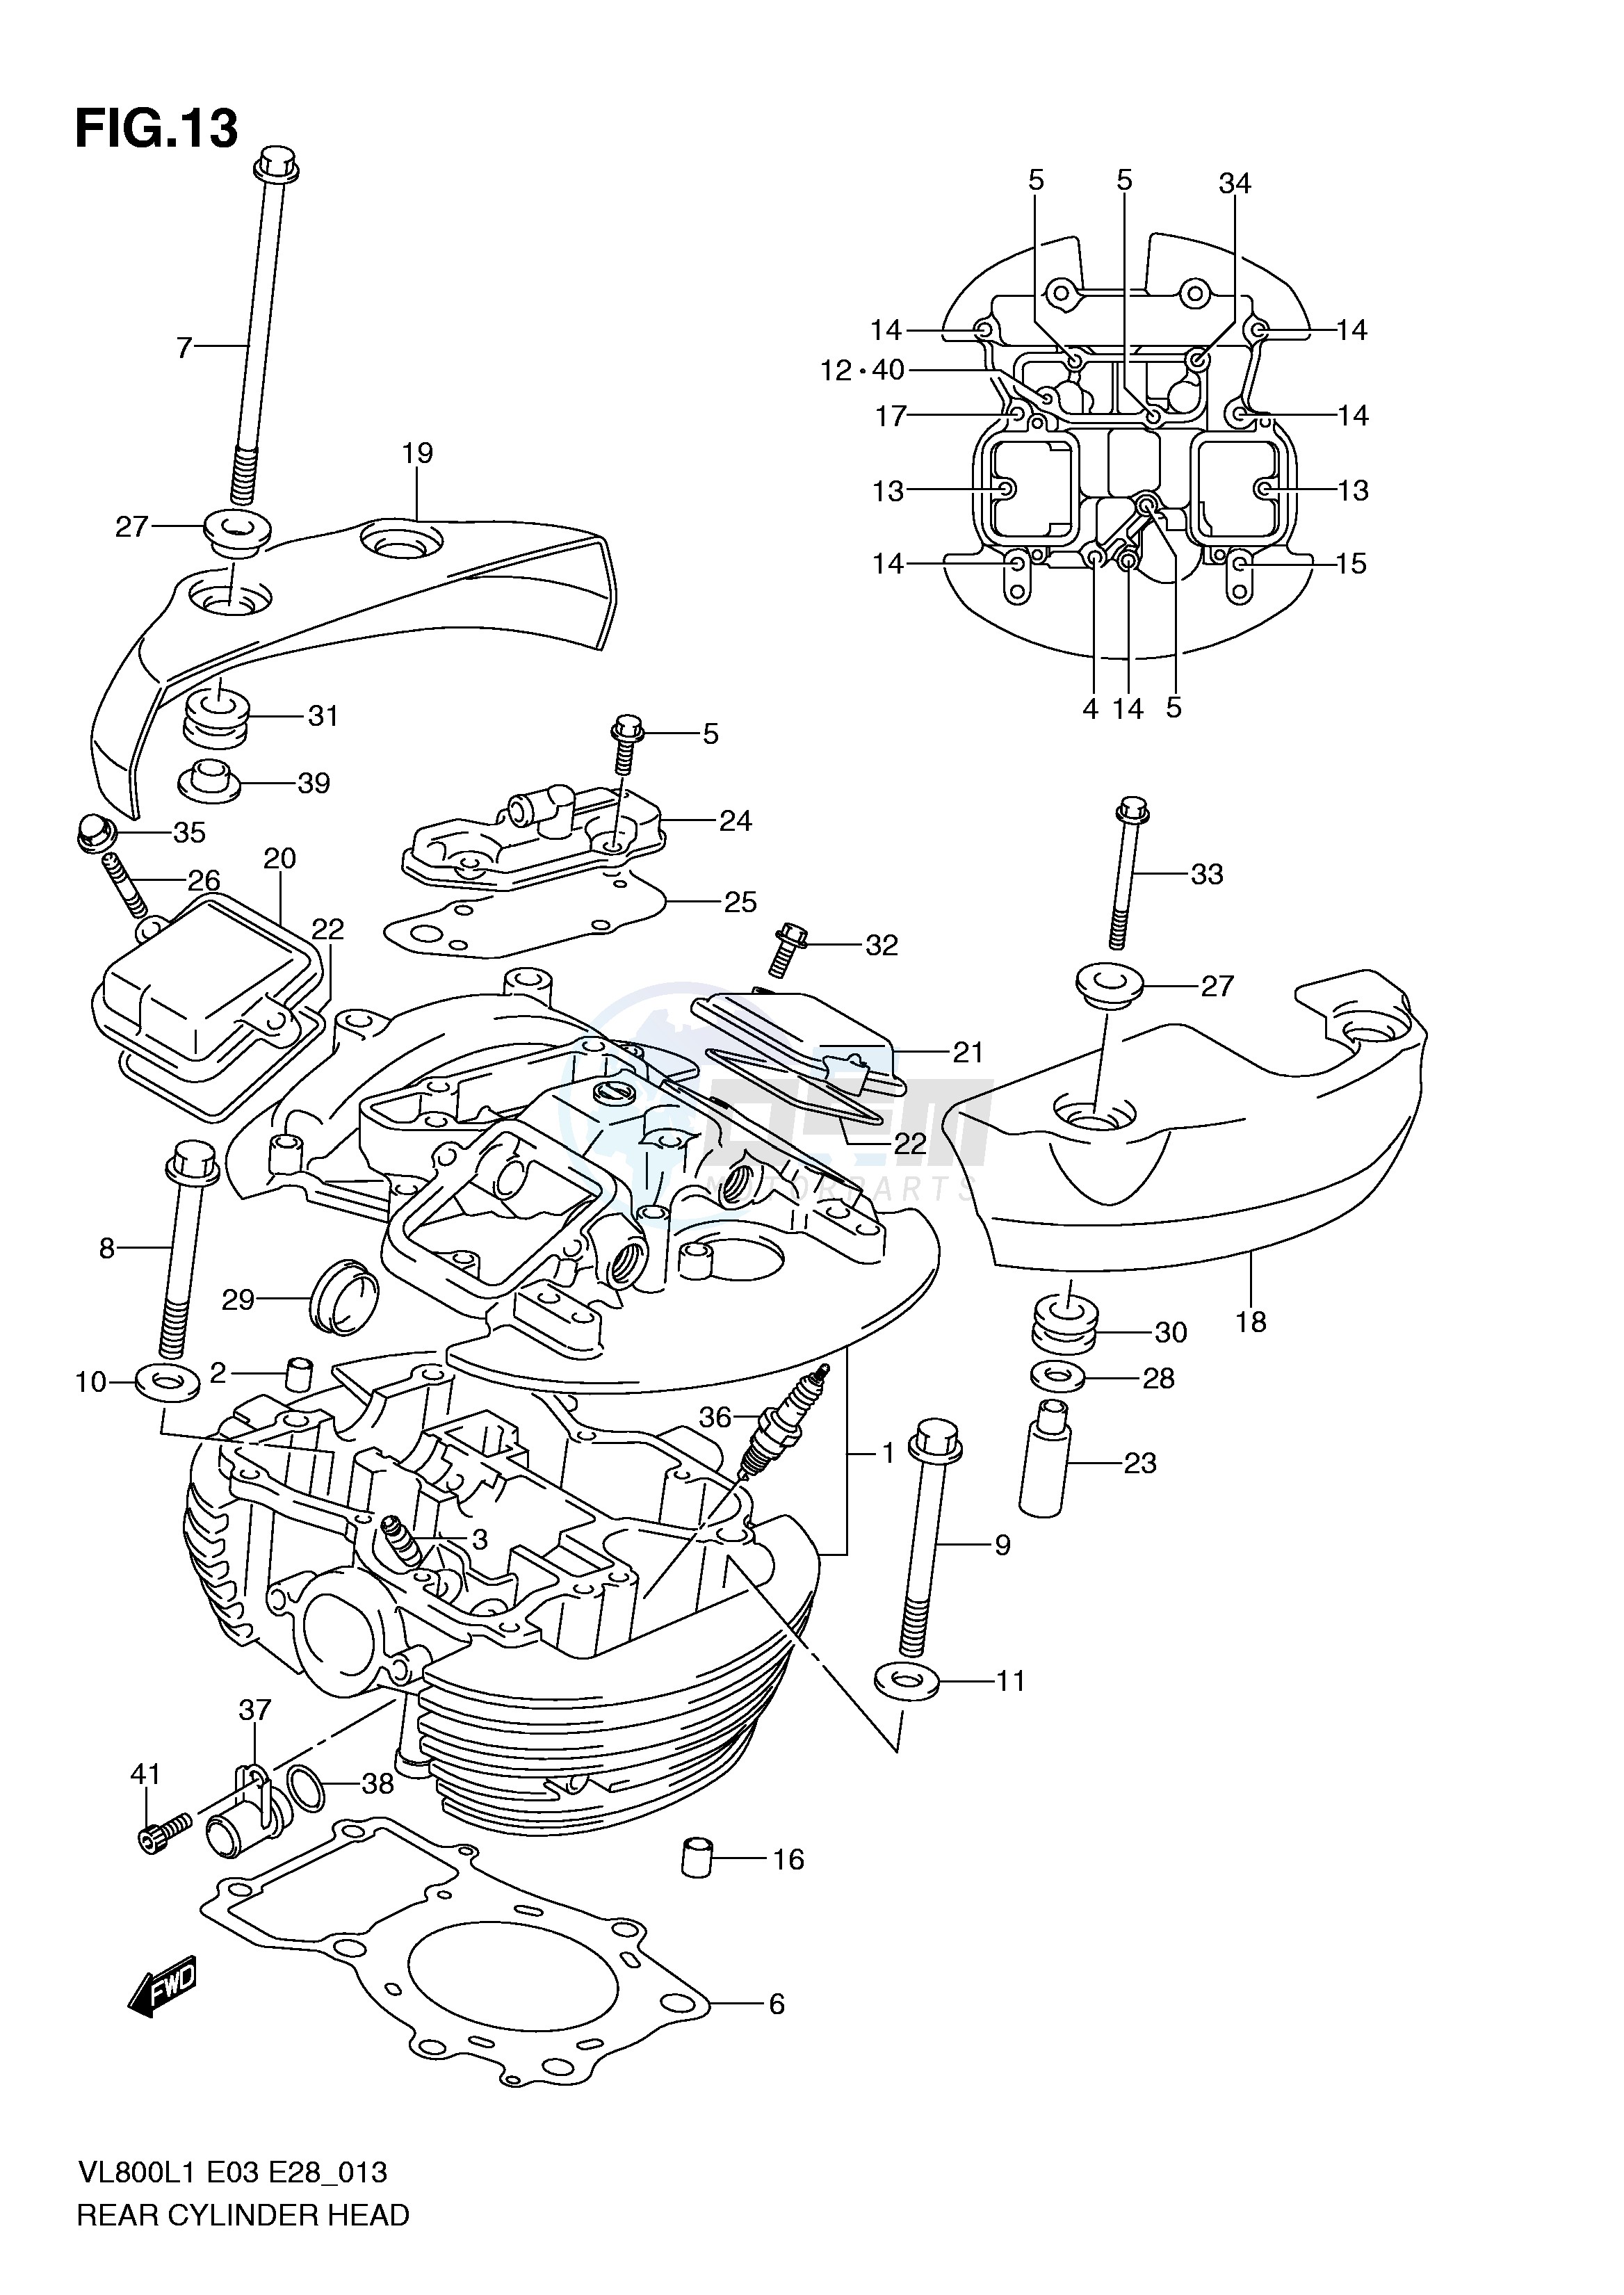 REAR CYLINDER HEAD (VL800L1 E33) blueprint